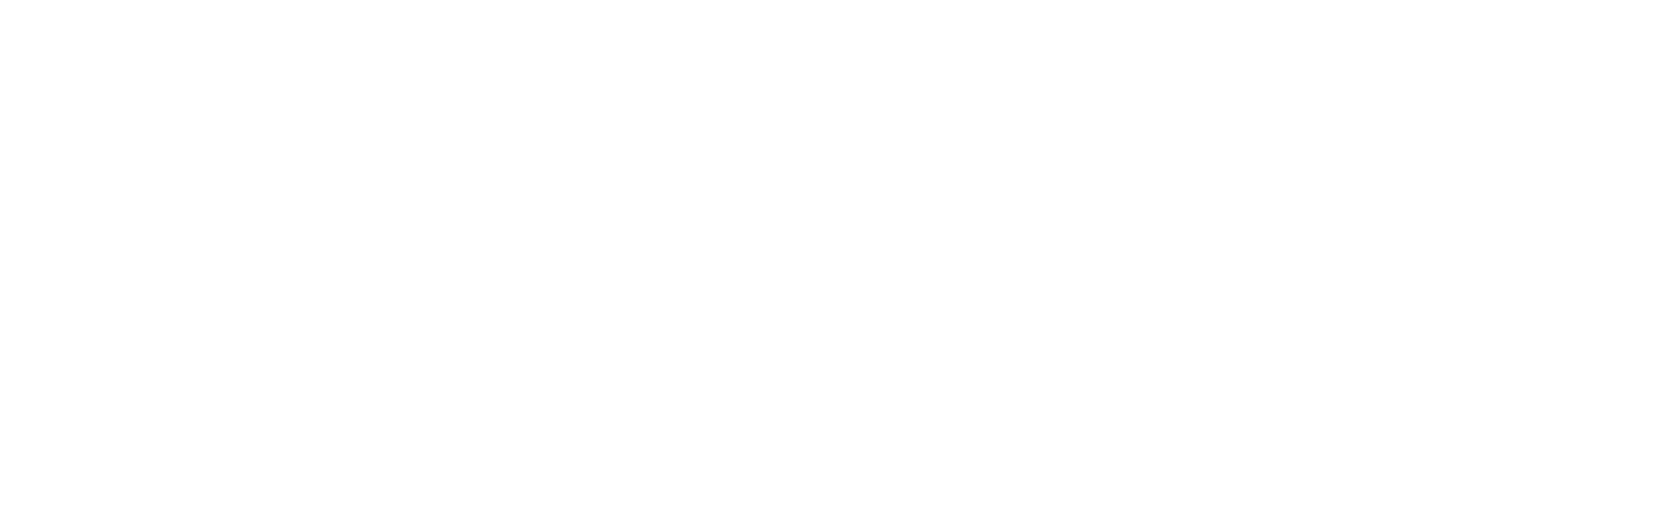 Торцевая заглушка Flexy TOREC LINE 50 для профилей Flexy: размер, вид, применение, способ монтажа в Москве, СПБ и России